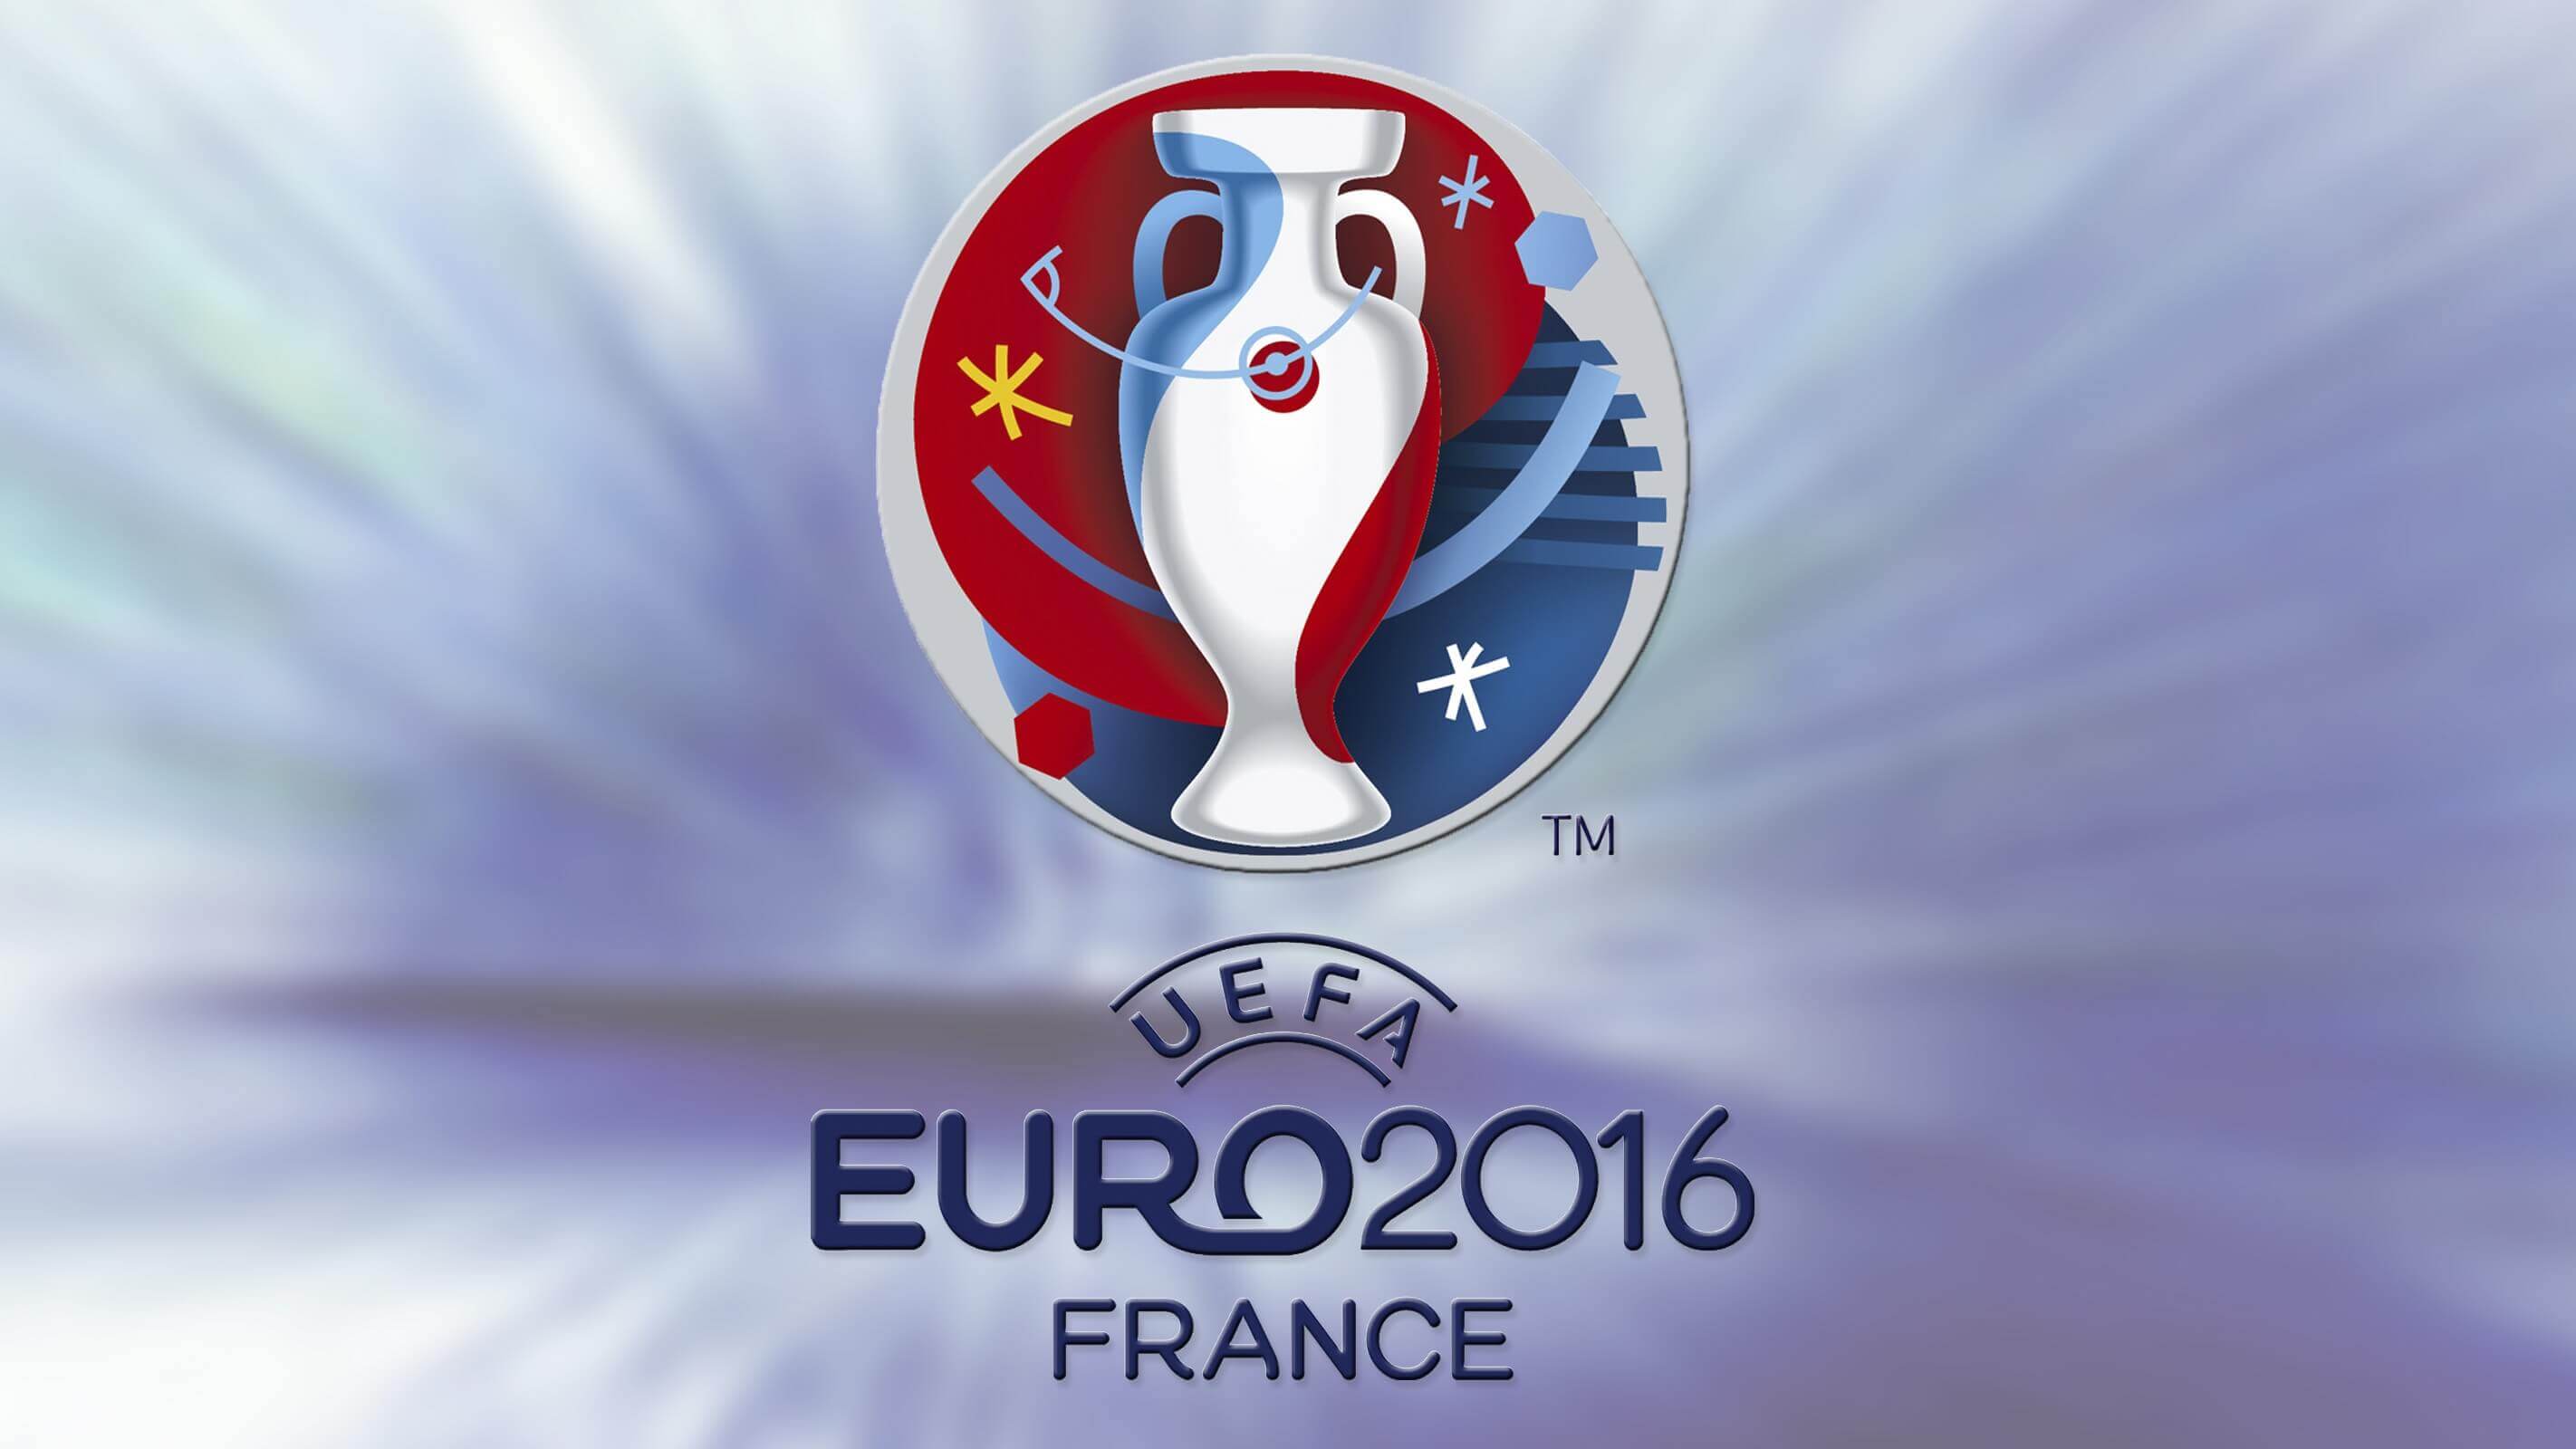 Image of Euro 2016 France logo